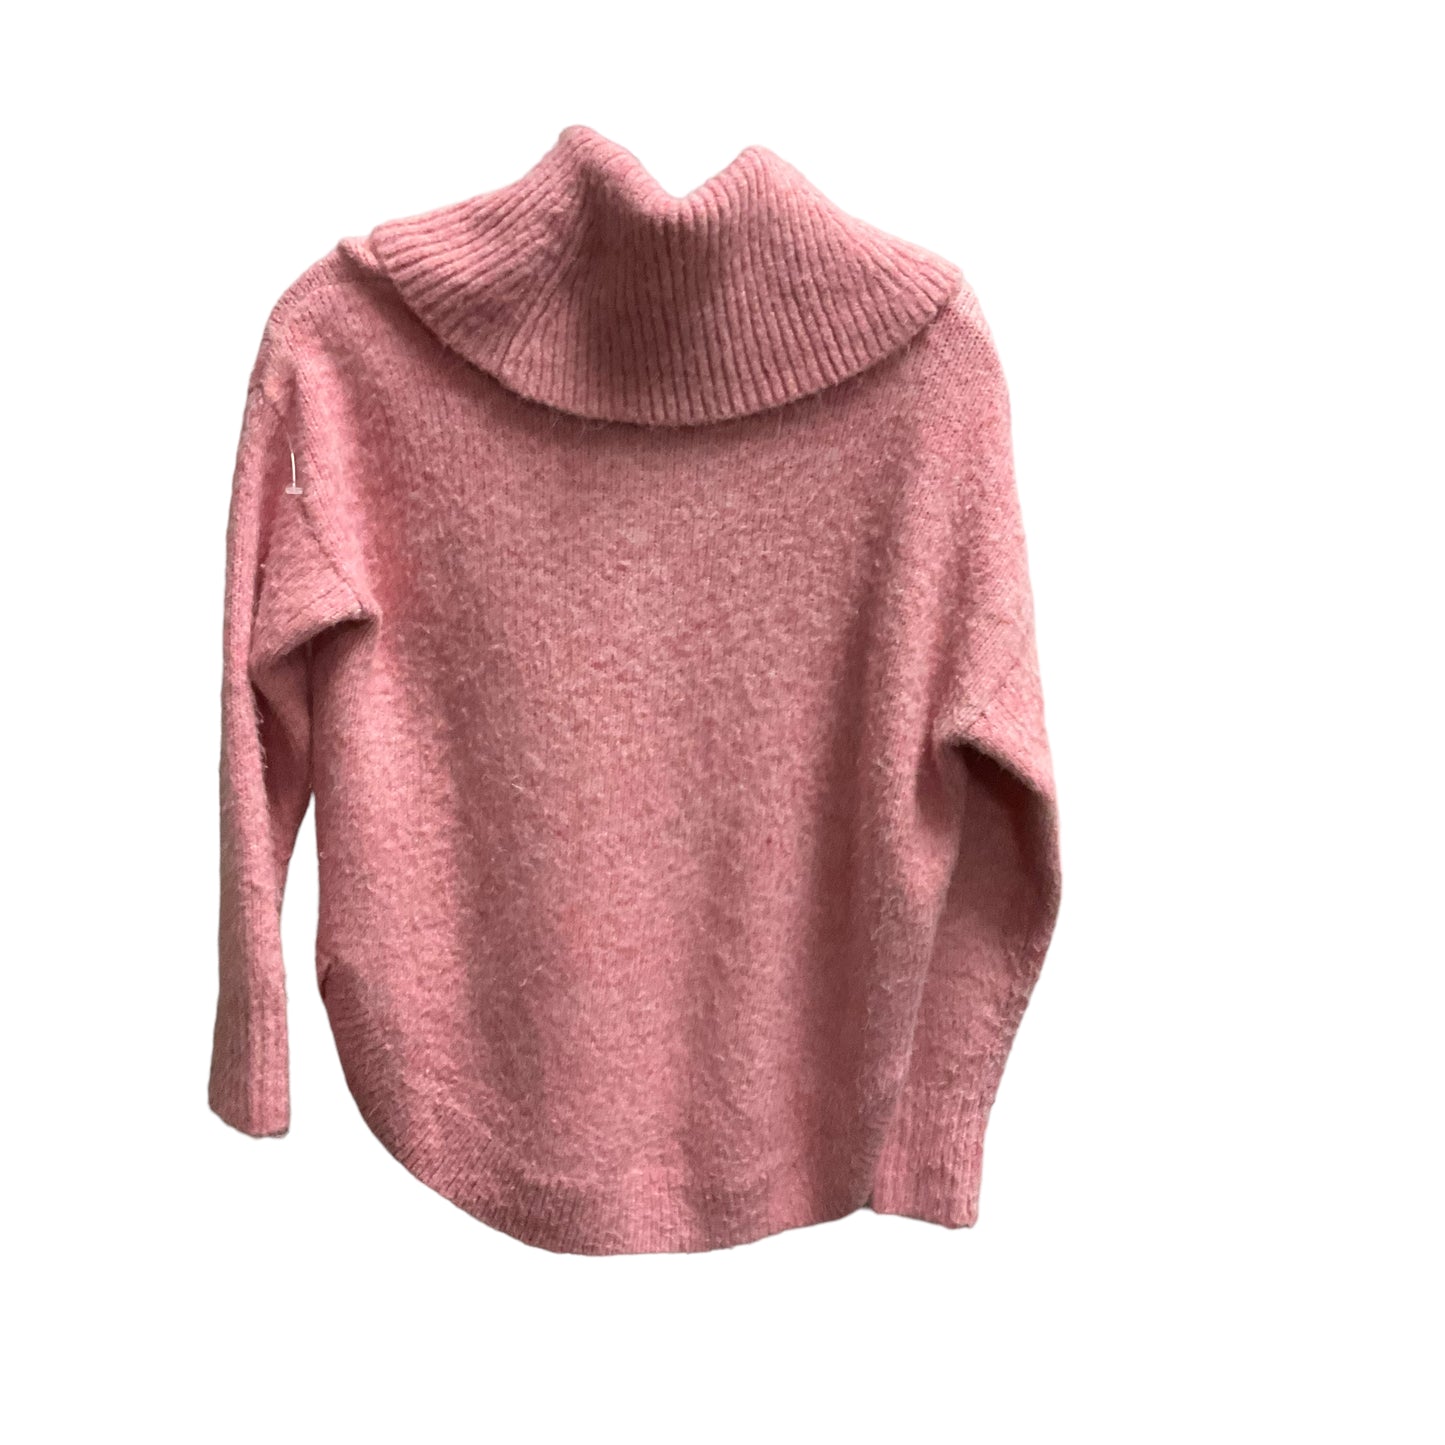 Sweater By Loft  Size: Petite   Xs